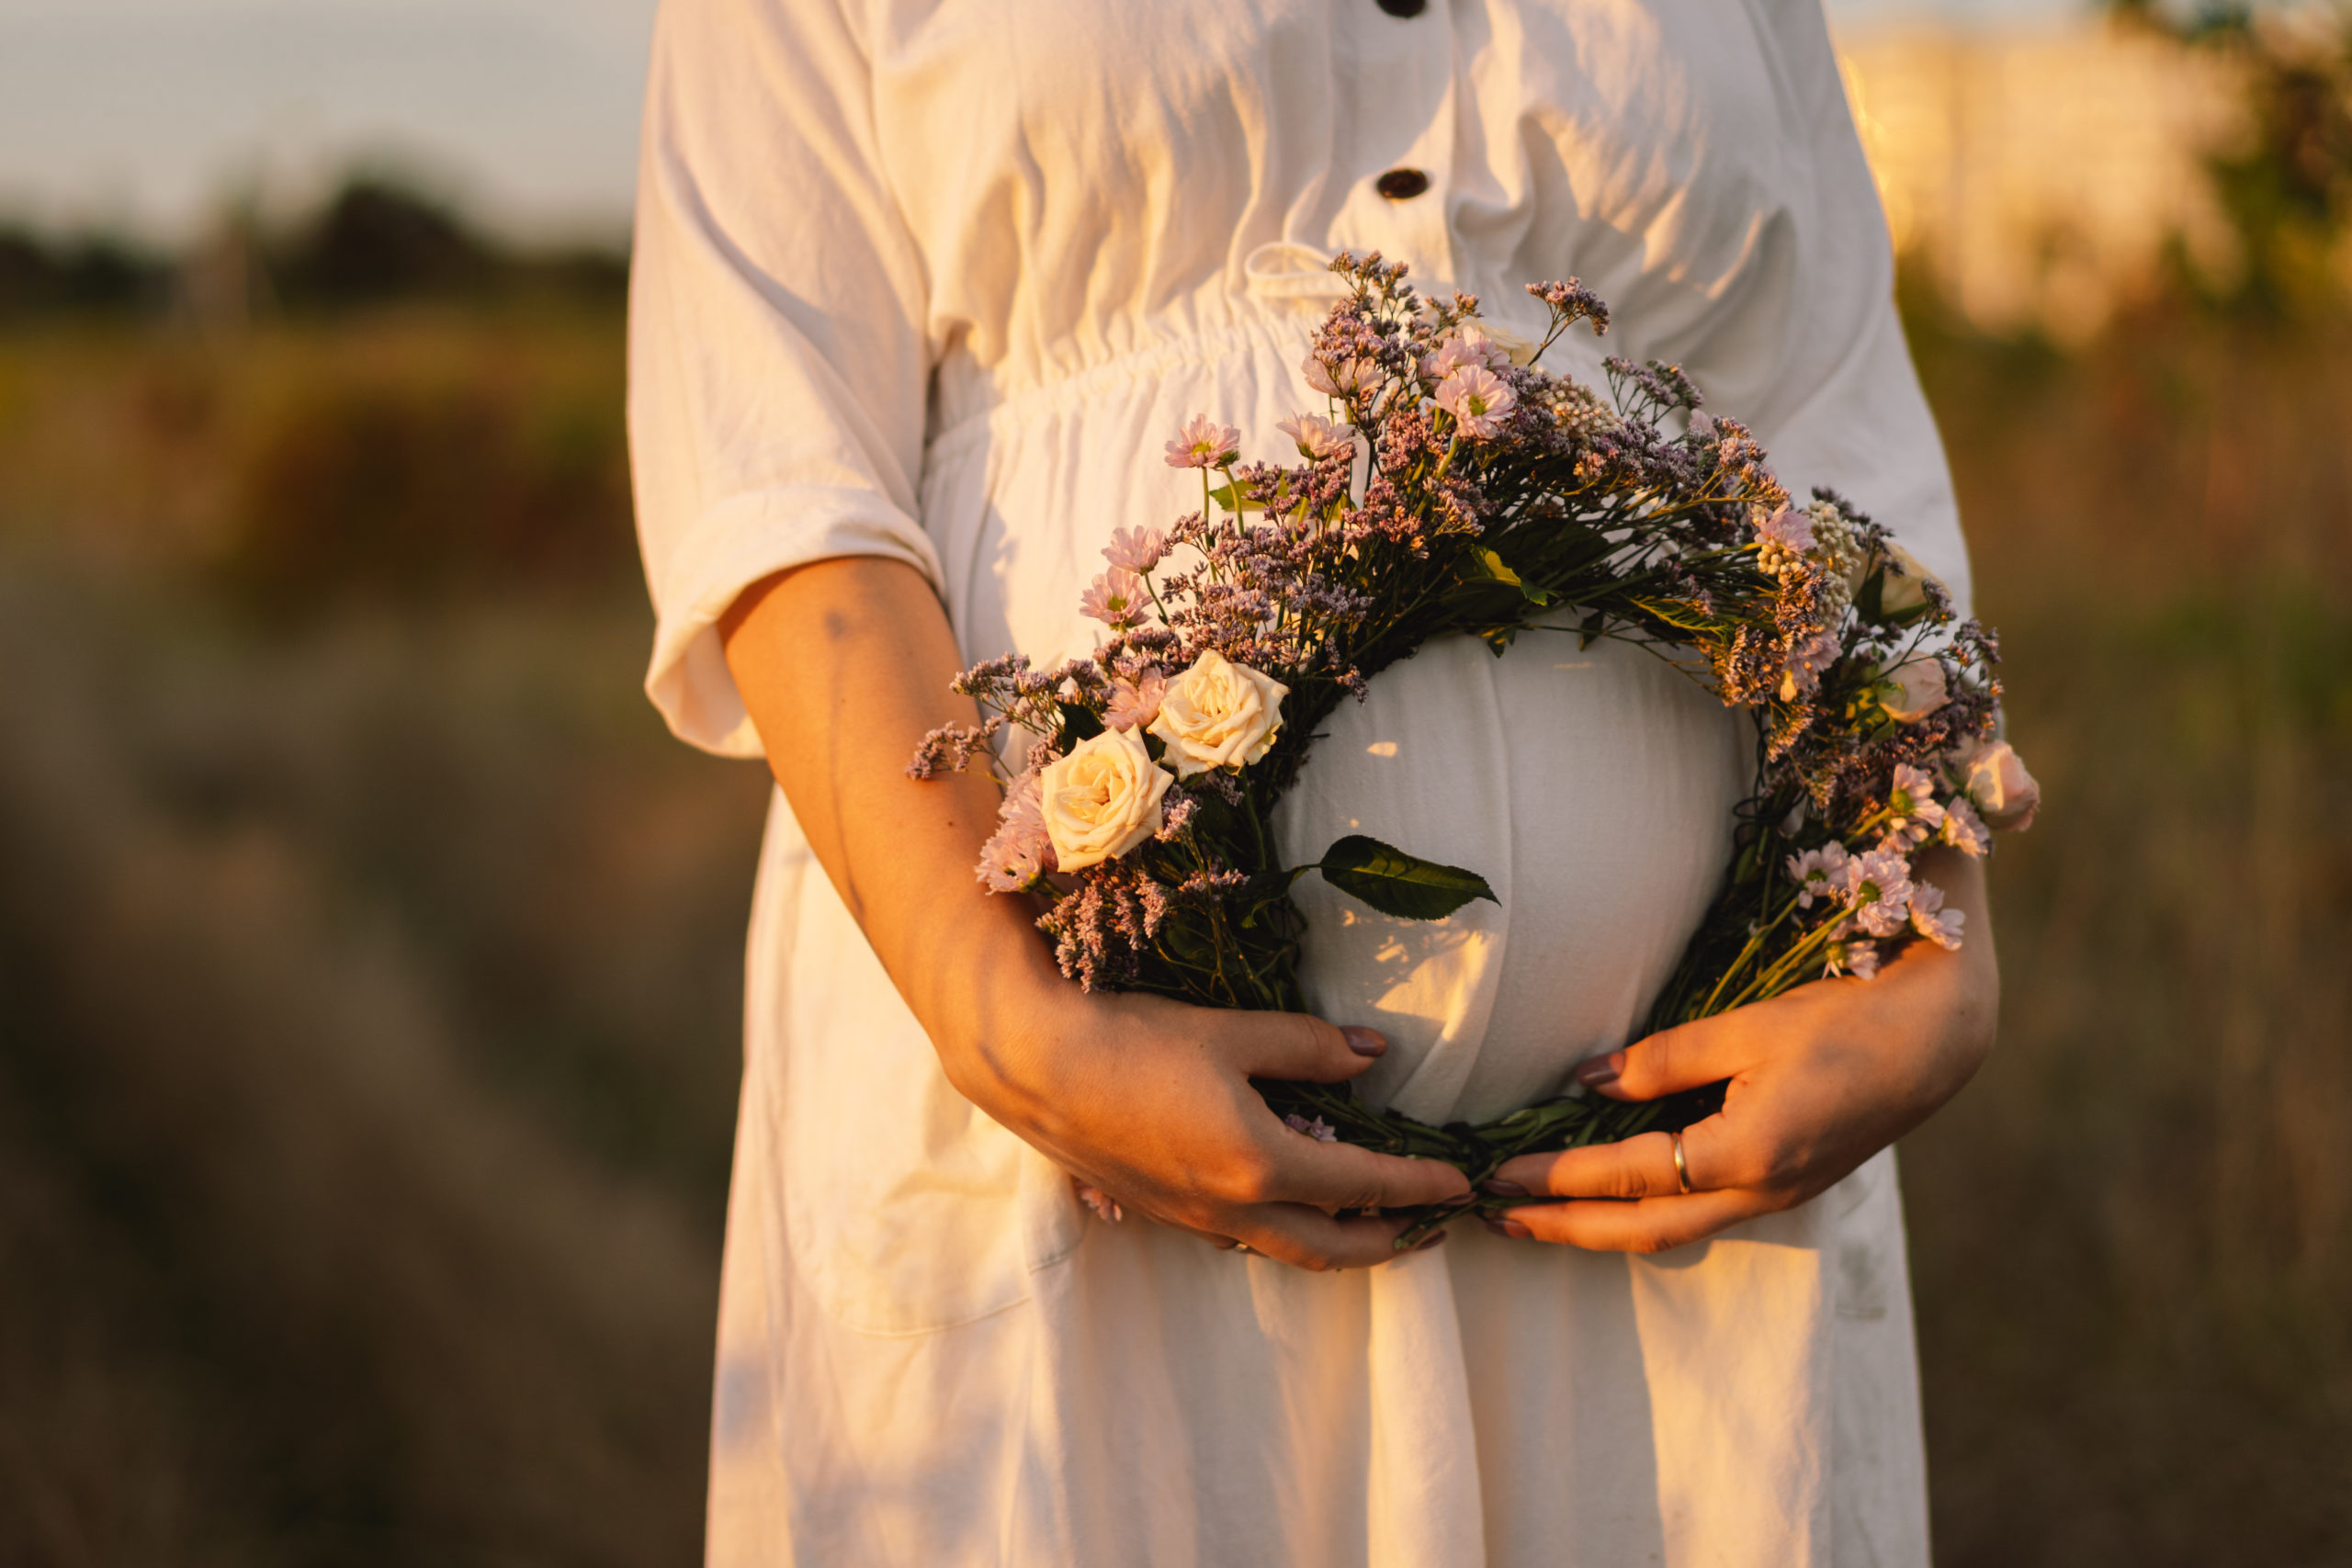 Schwangere Frau steht in weißem Leinenkleid, mit halblangem Arm, auf einem Feld und hält einen üppig gebundenen Blumenkranz, vor ihrem Babybauch.